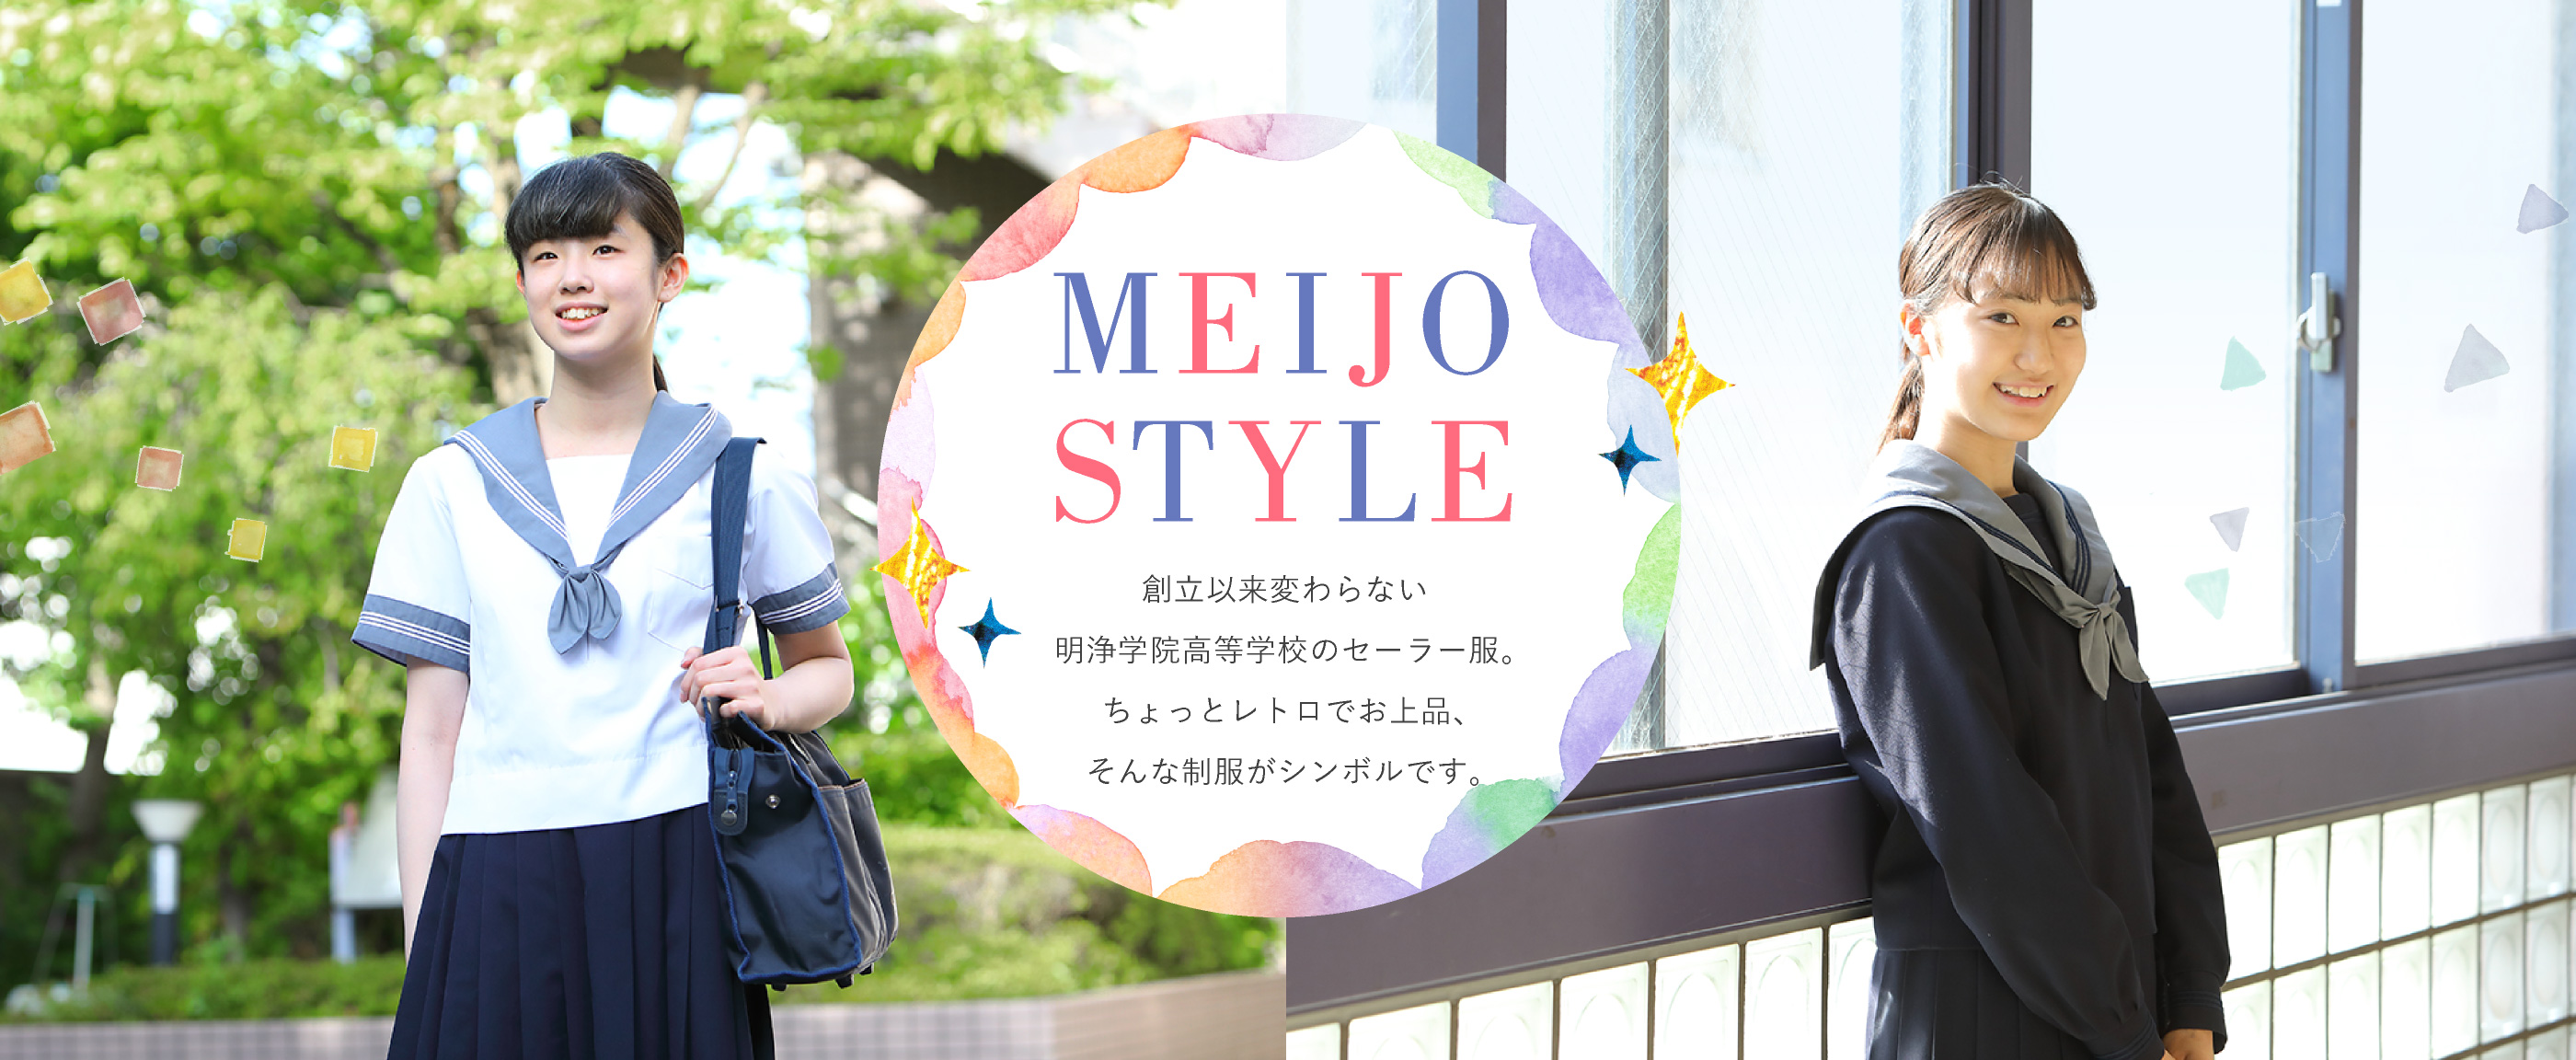 MEIJO STYLE 創立以来変わらない明浄学院高等学校のセーラー服。ちょっとレトロでお上品、そんな制服がシンボルです。